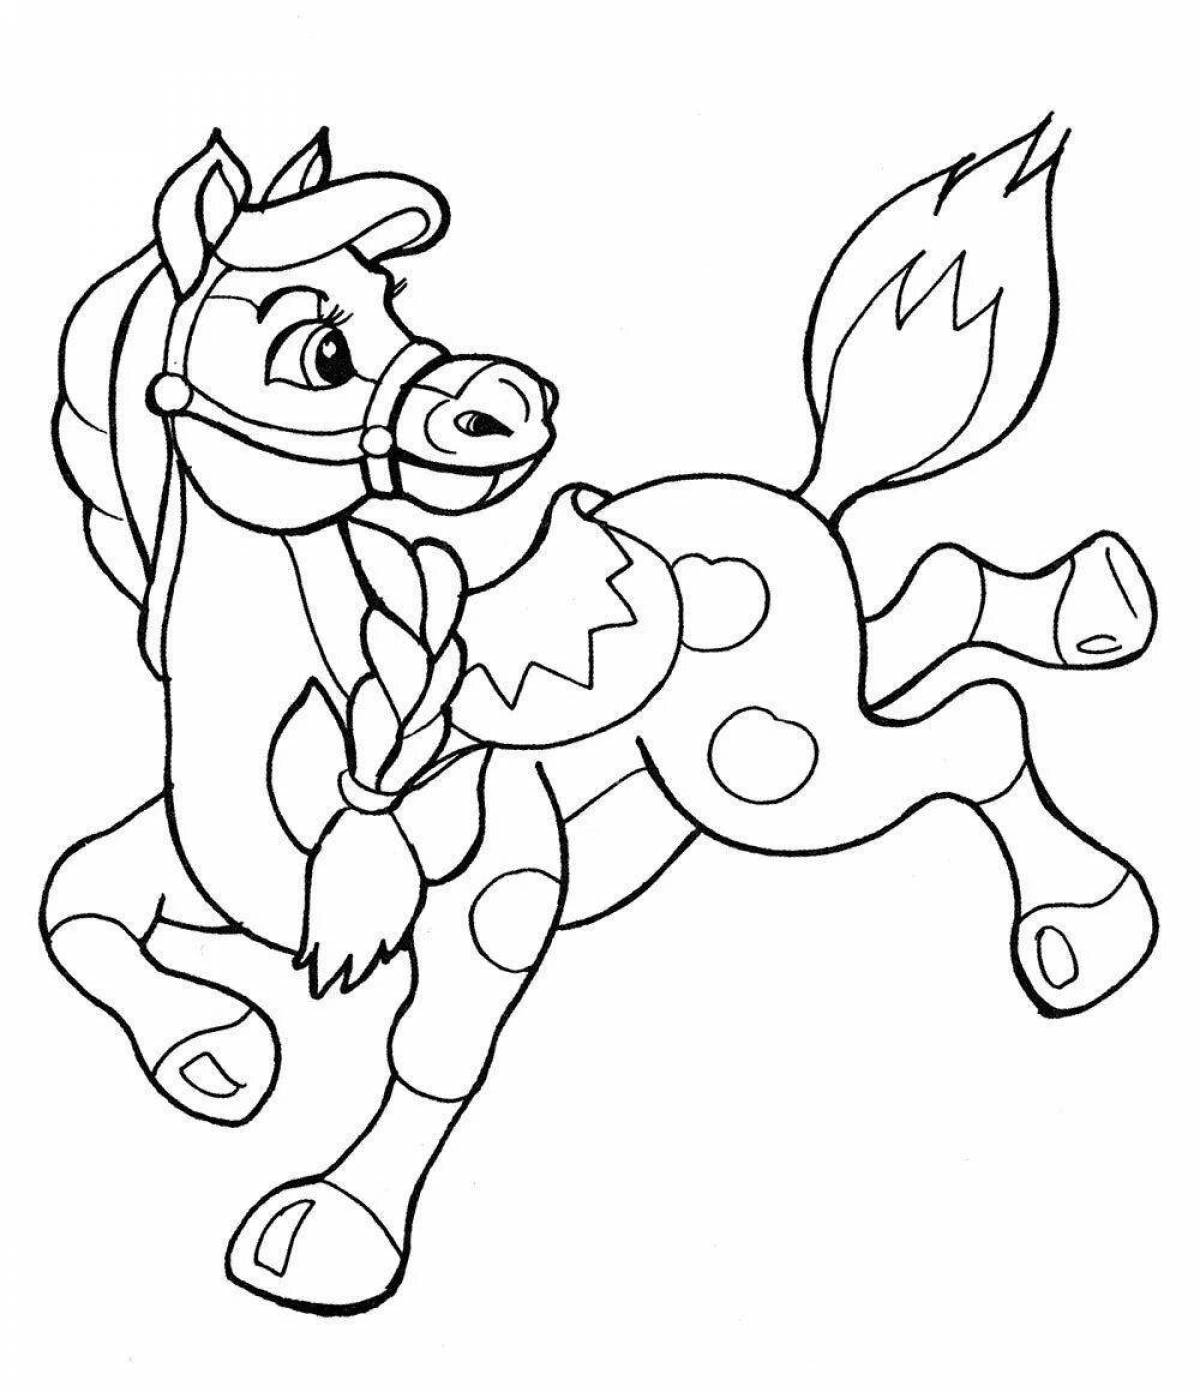 Изысканная раскраска лошадь для детей 6-7 лет